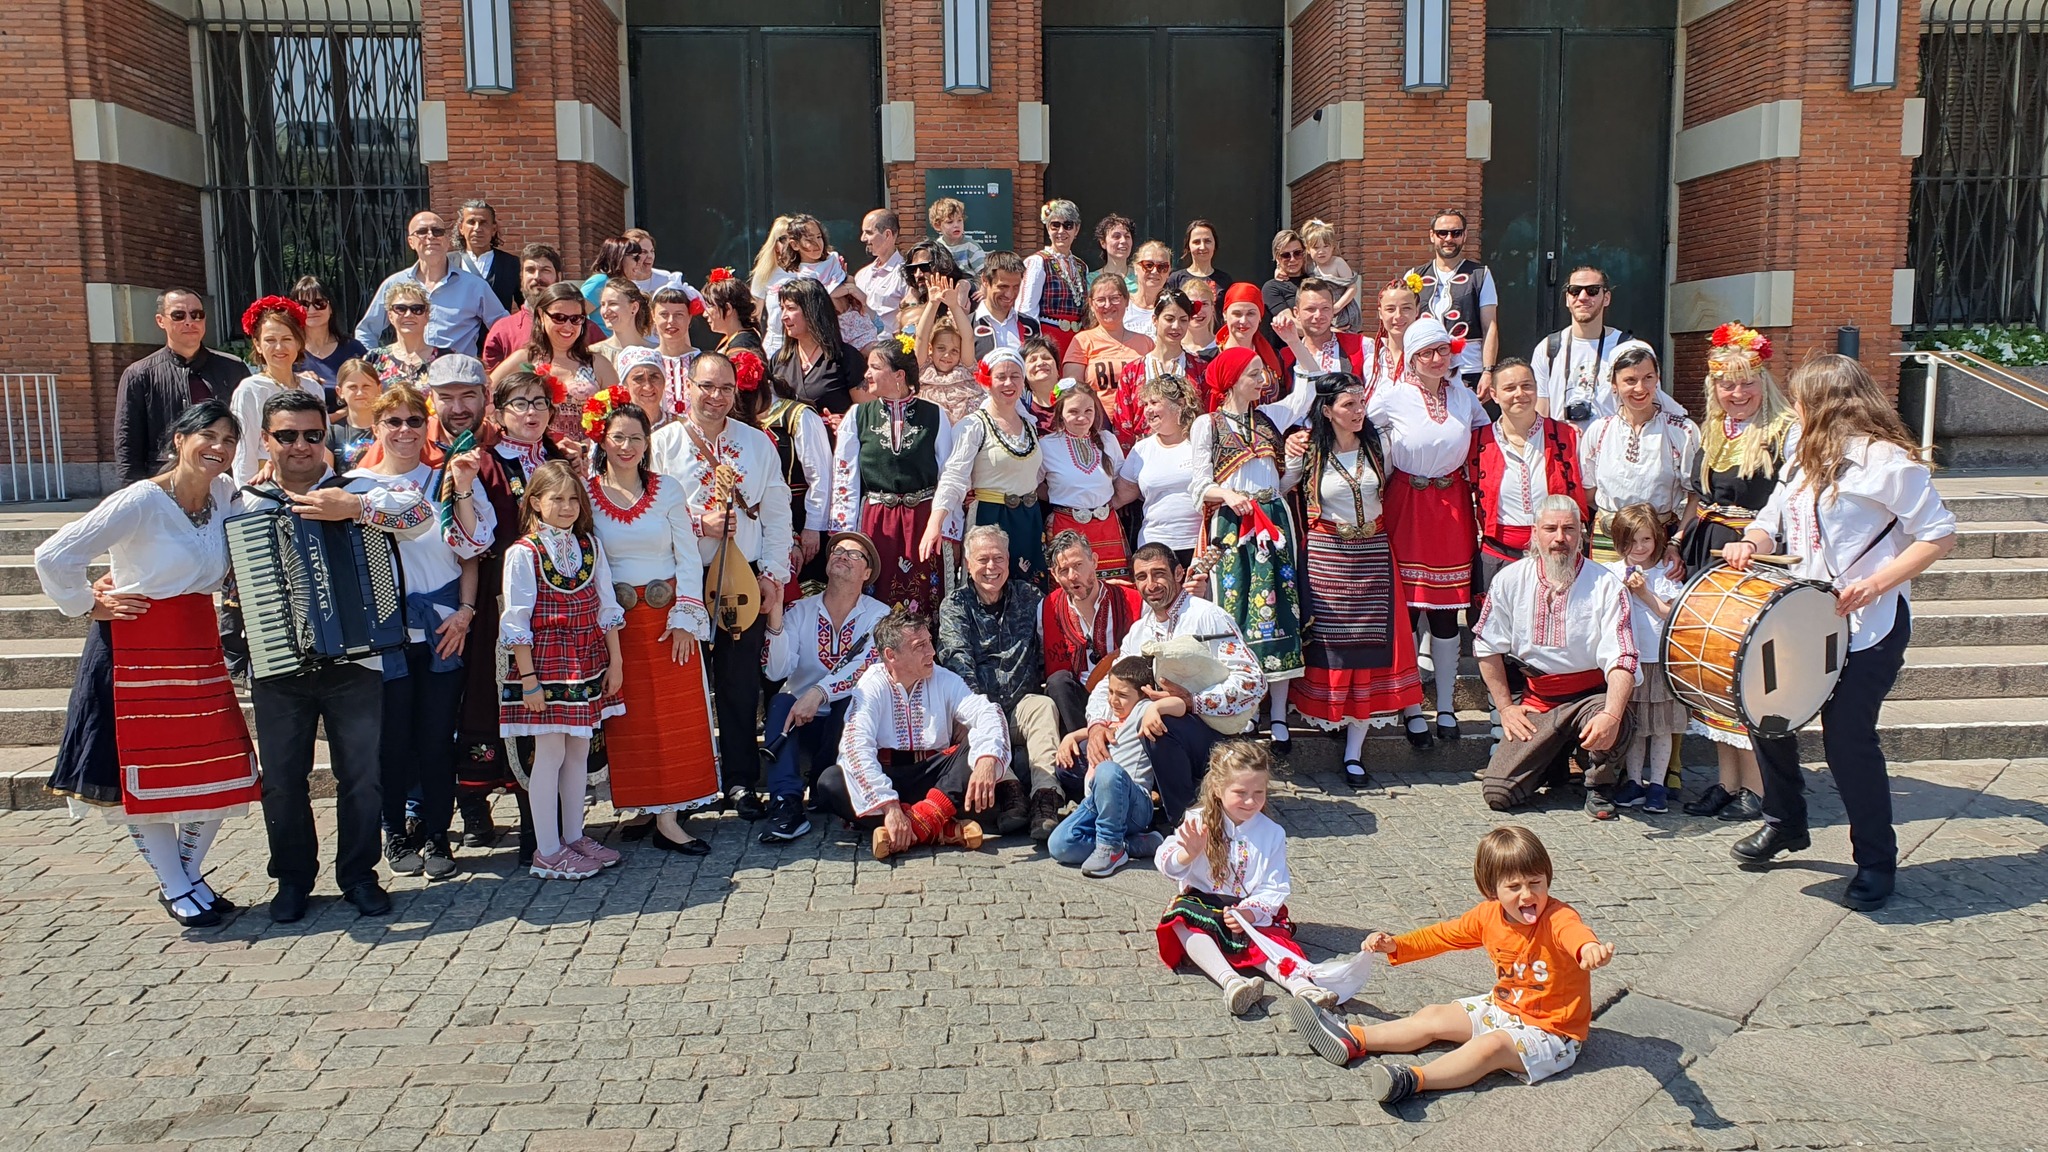 За девети път пред красивата сграда на община Фредериксберг в Копенхаген се изви най-голямото и пъстро българско хоро в Дания